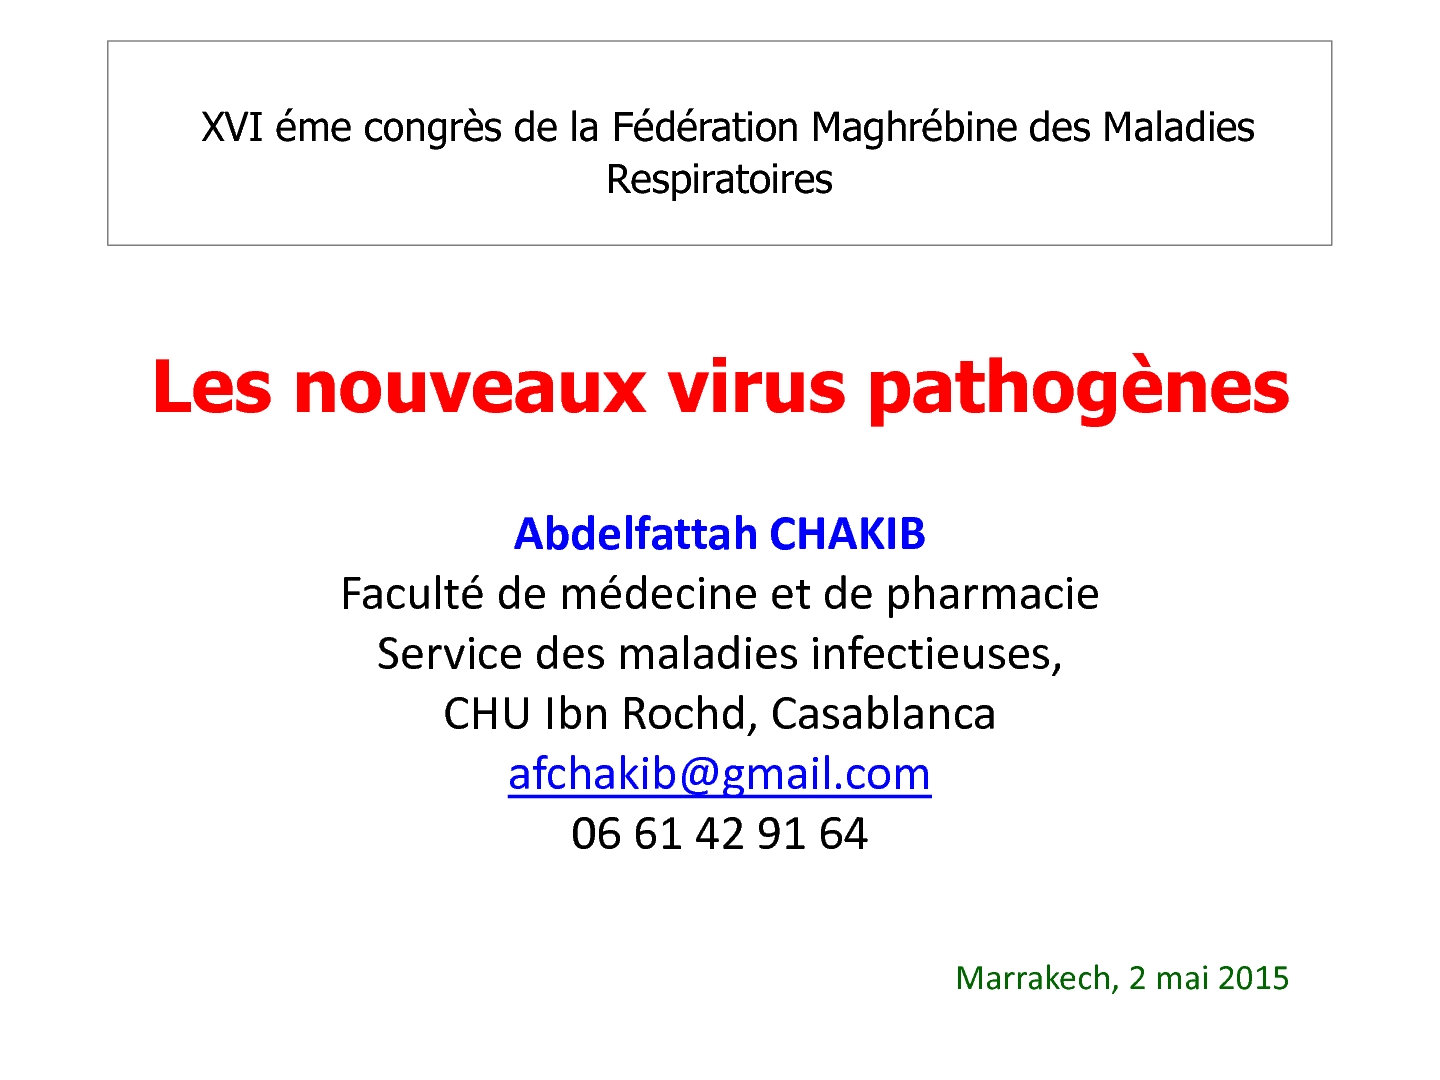 Les nouveaux virus pathogènes. A. CHAKIB